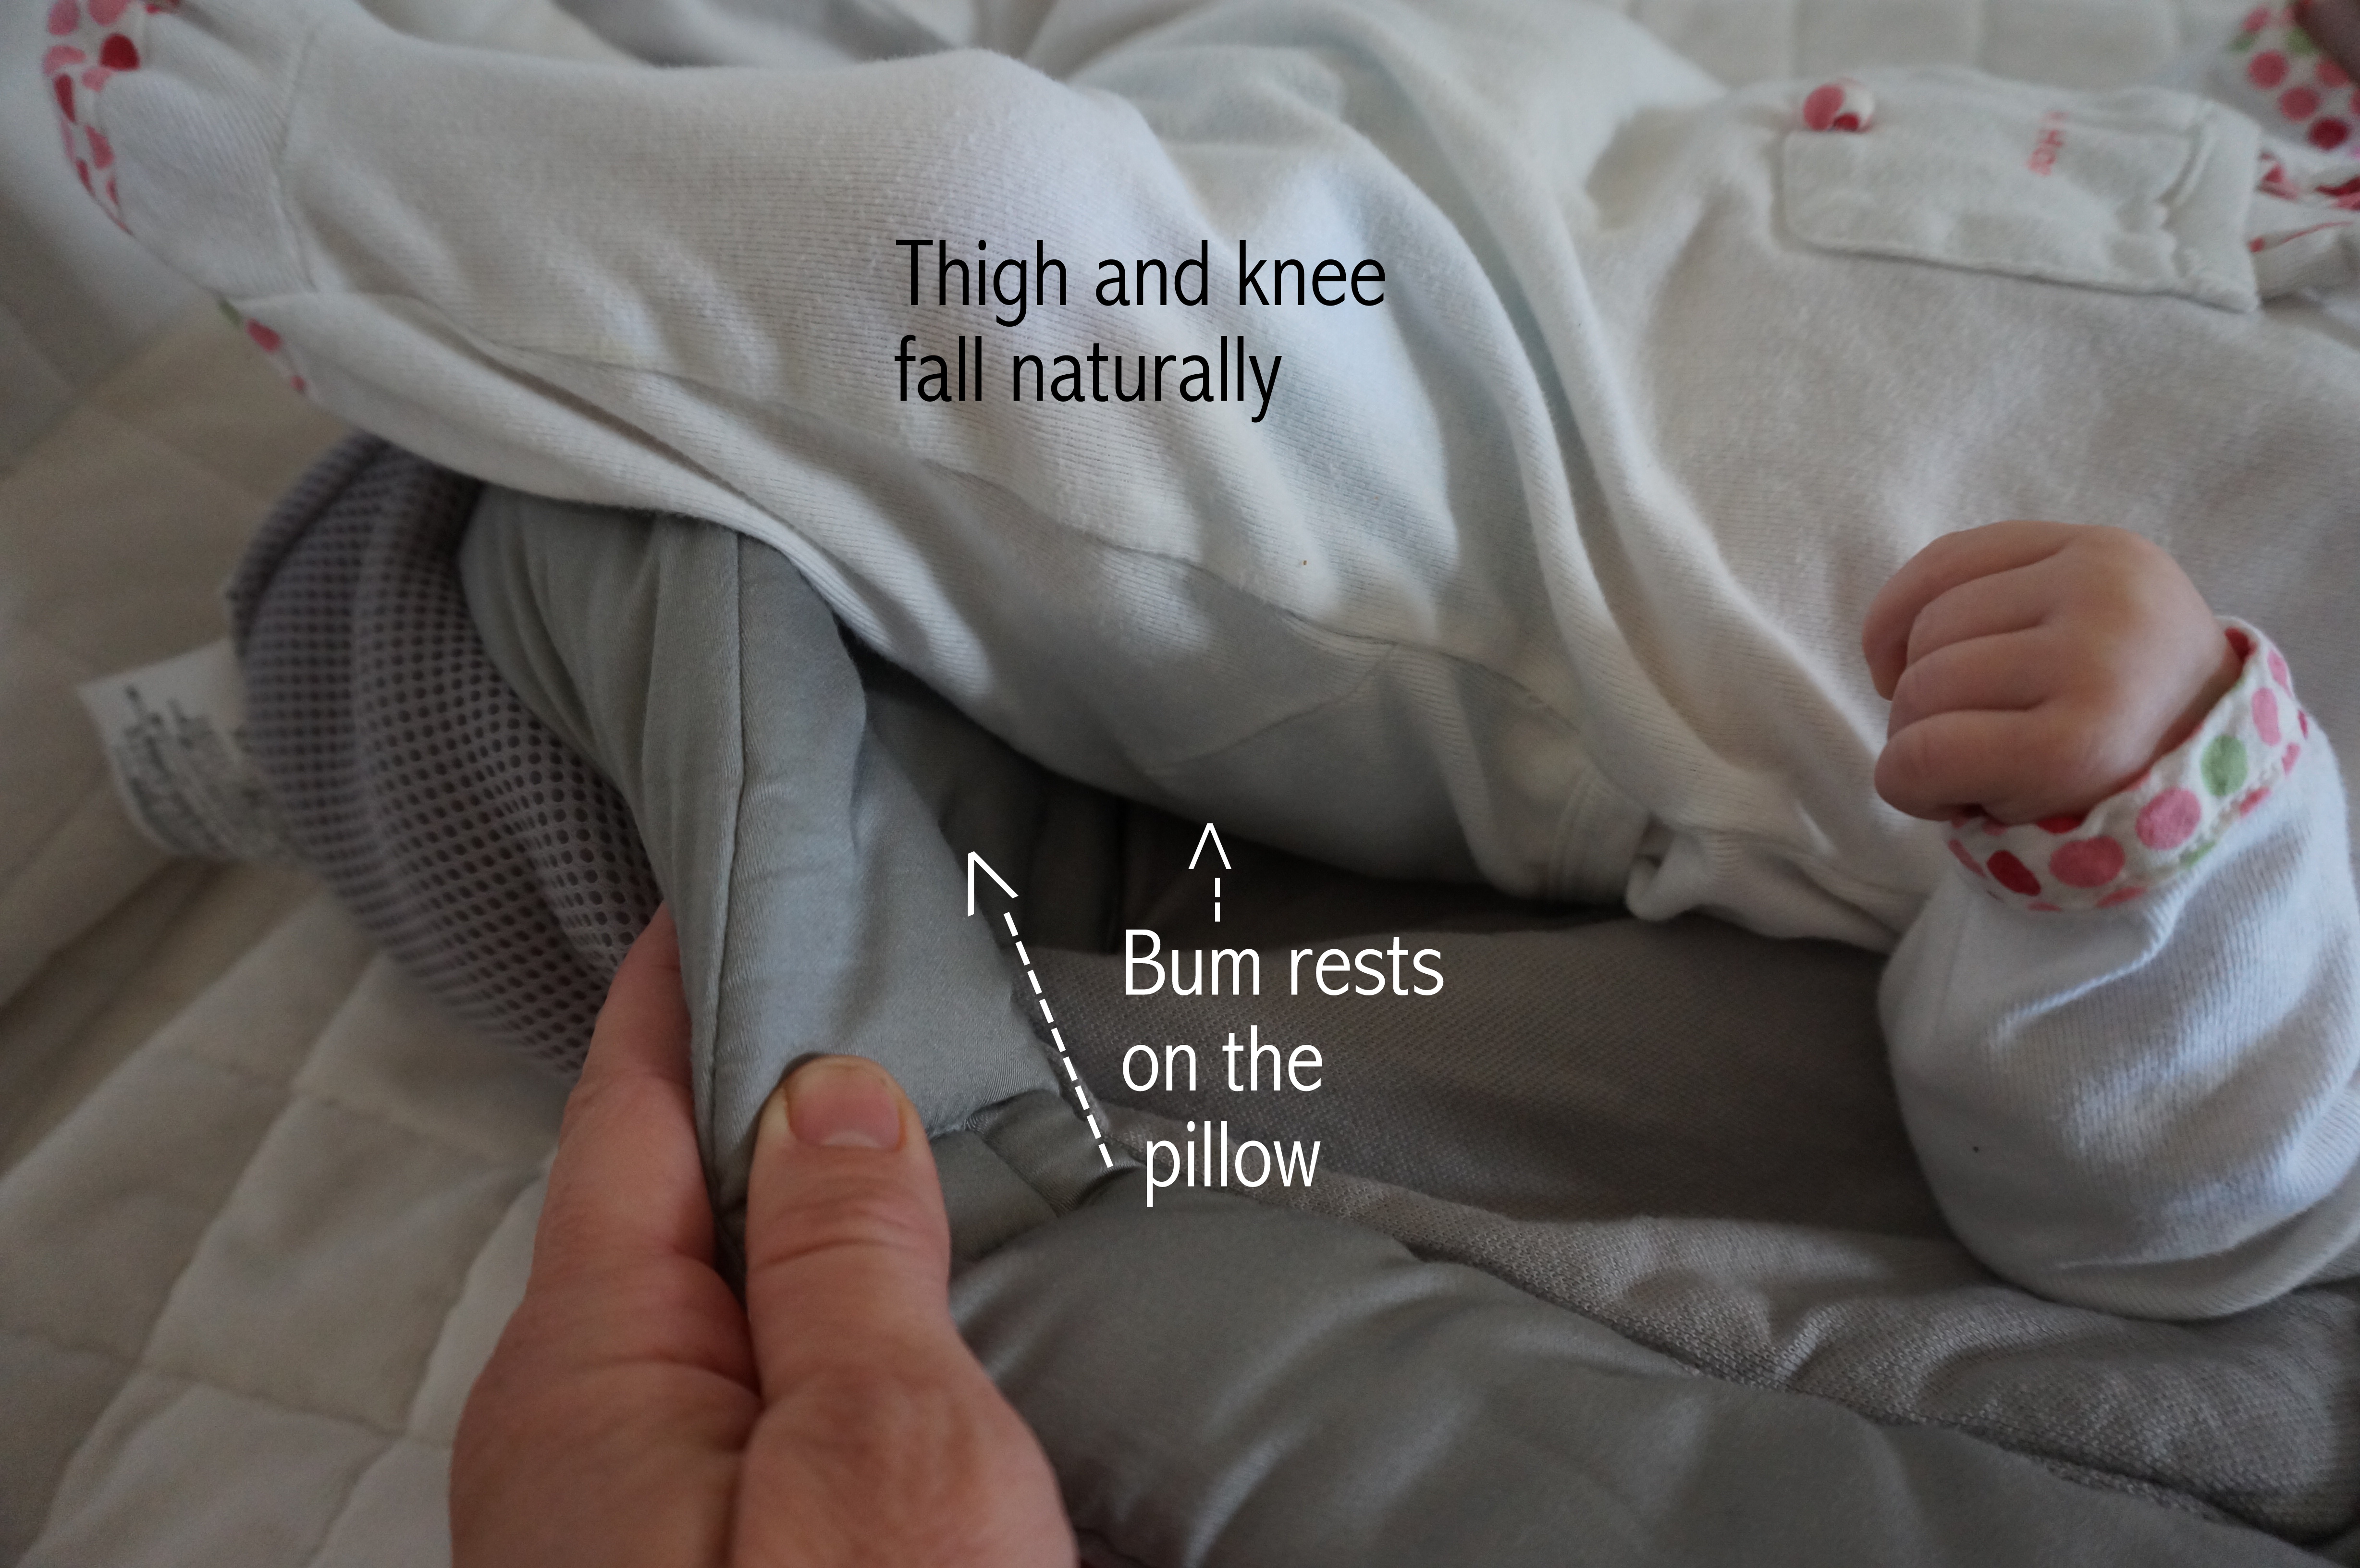 ergobaby 360 infant insert pillow